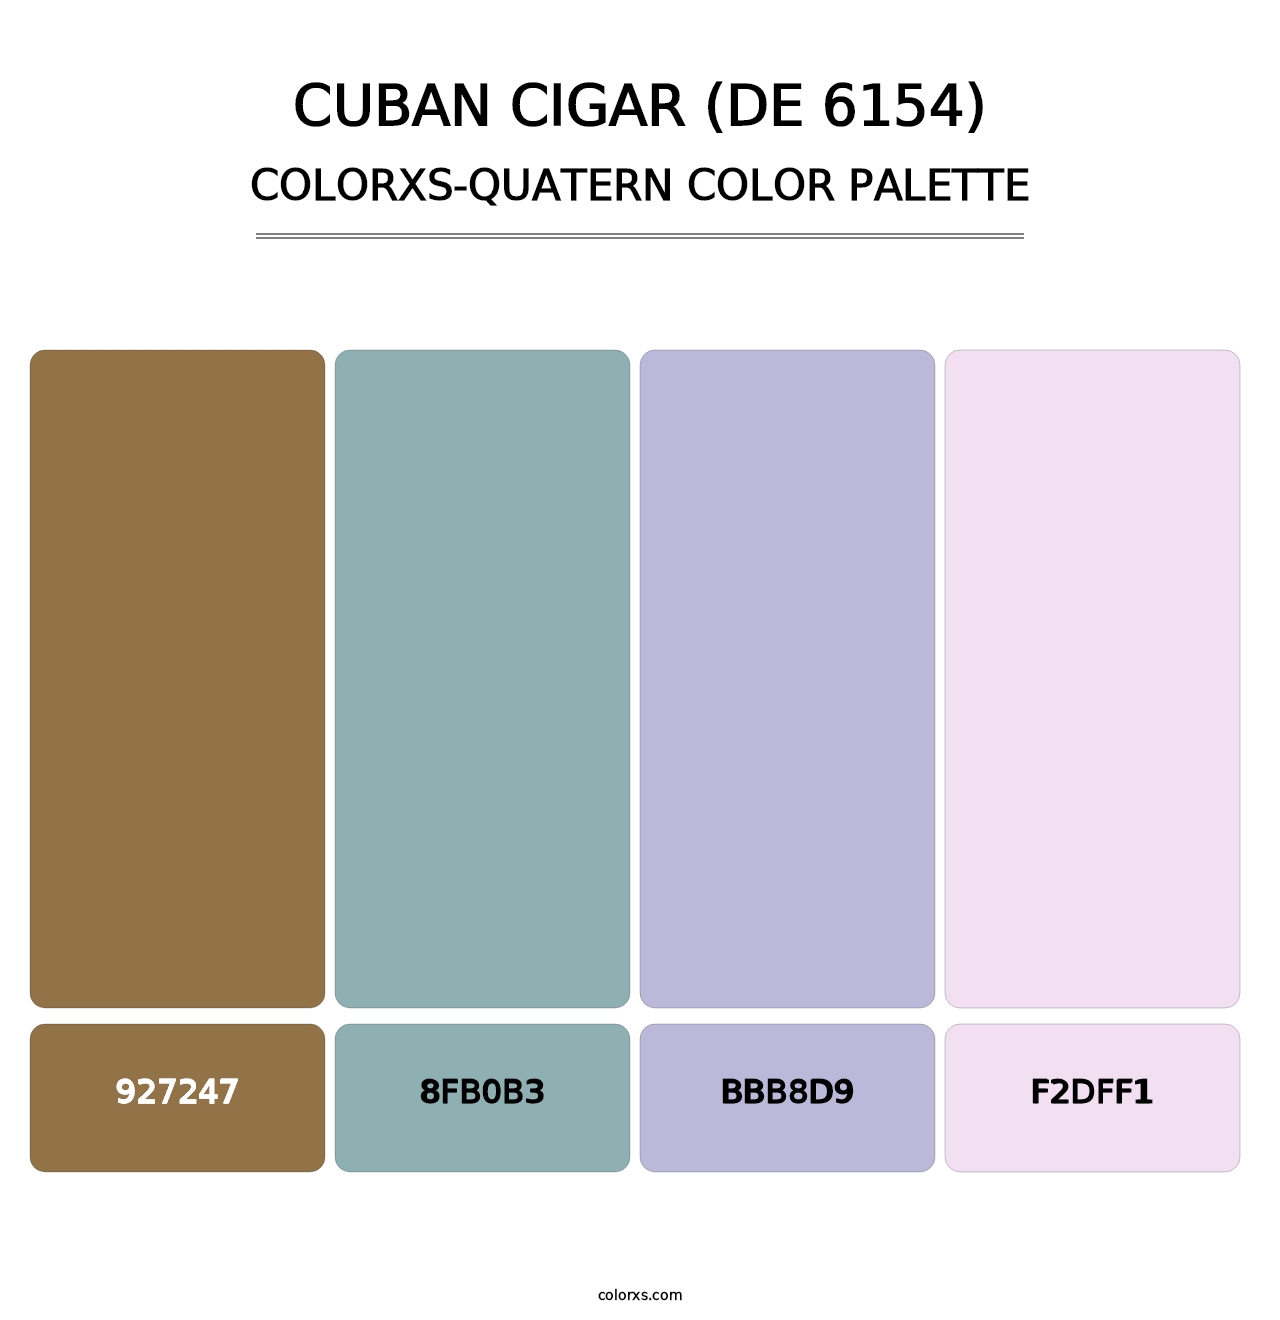 Cuban Cigar (DE 6154) - Colorxs Quatern Palette